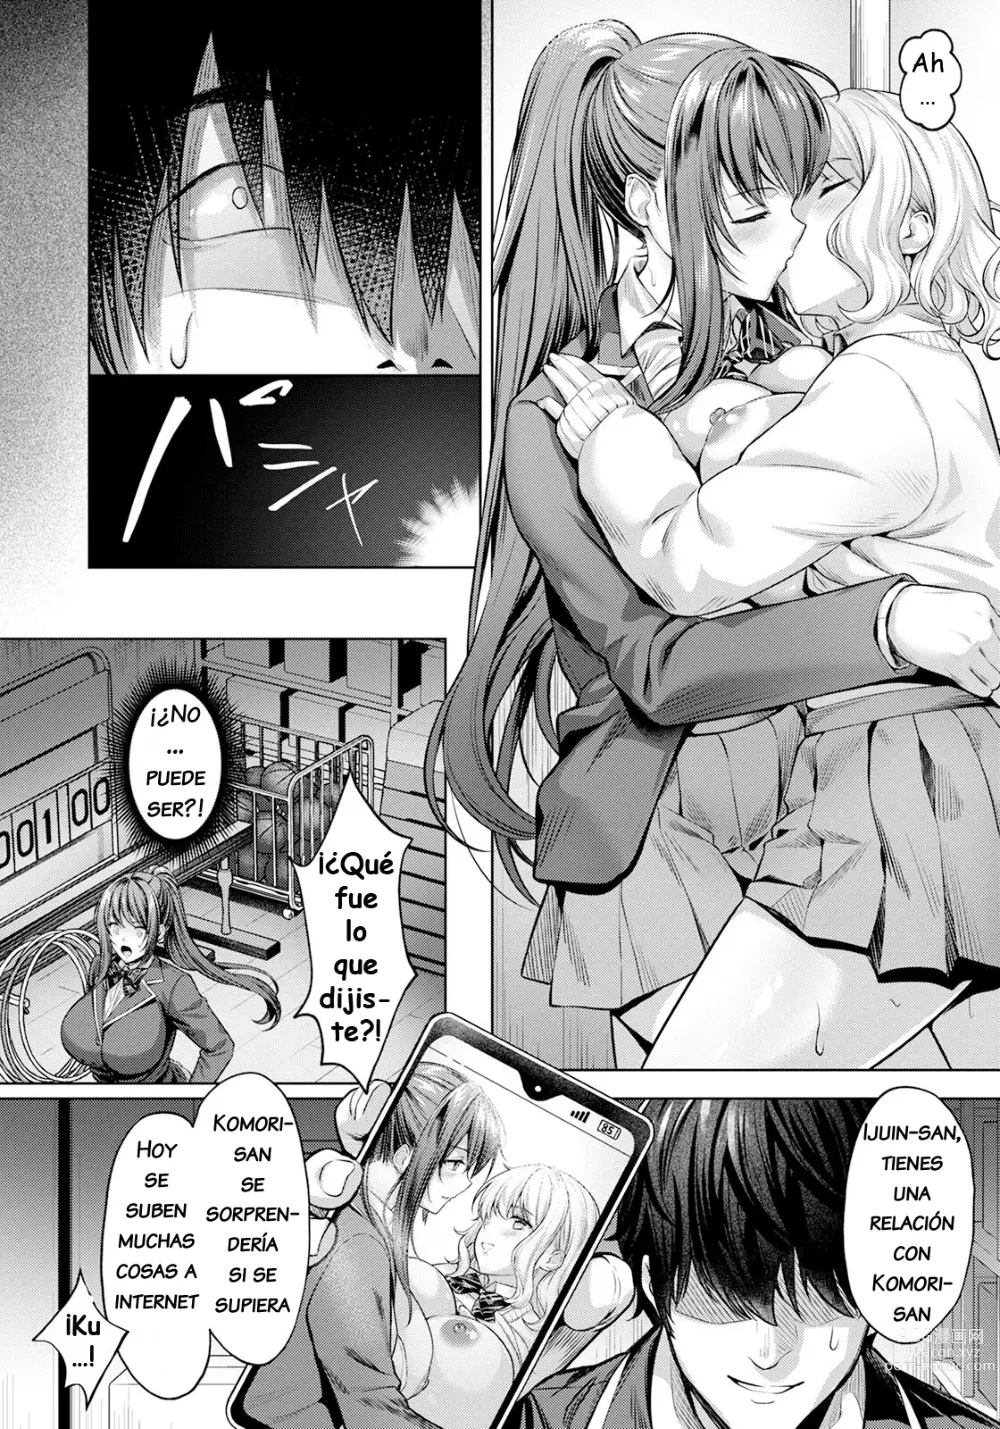 Page 4 of manga Dominación del Placer ~No puedo creer que perdí~